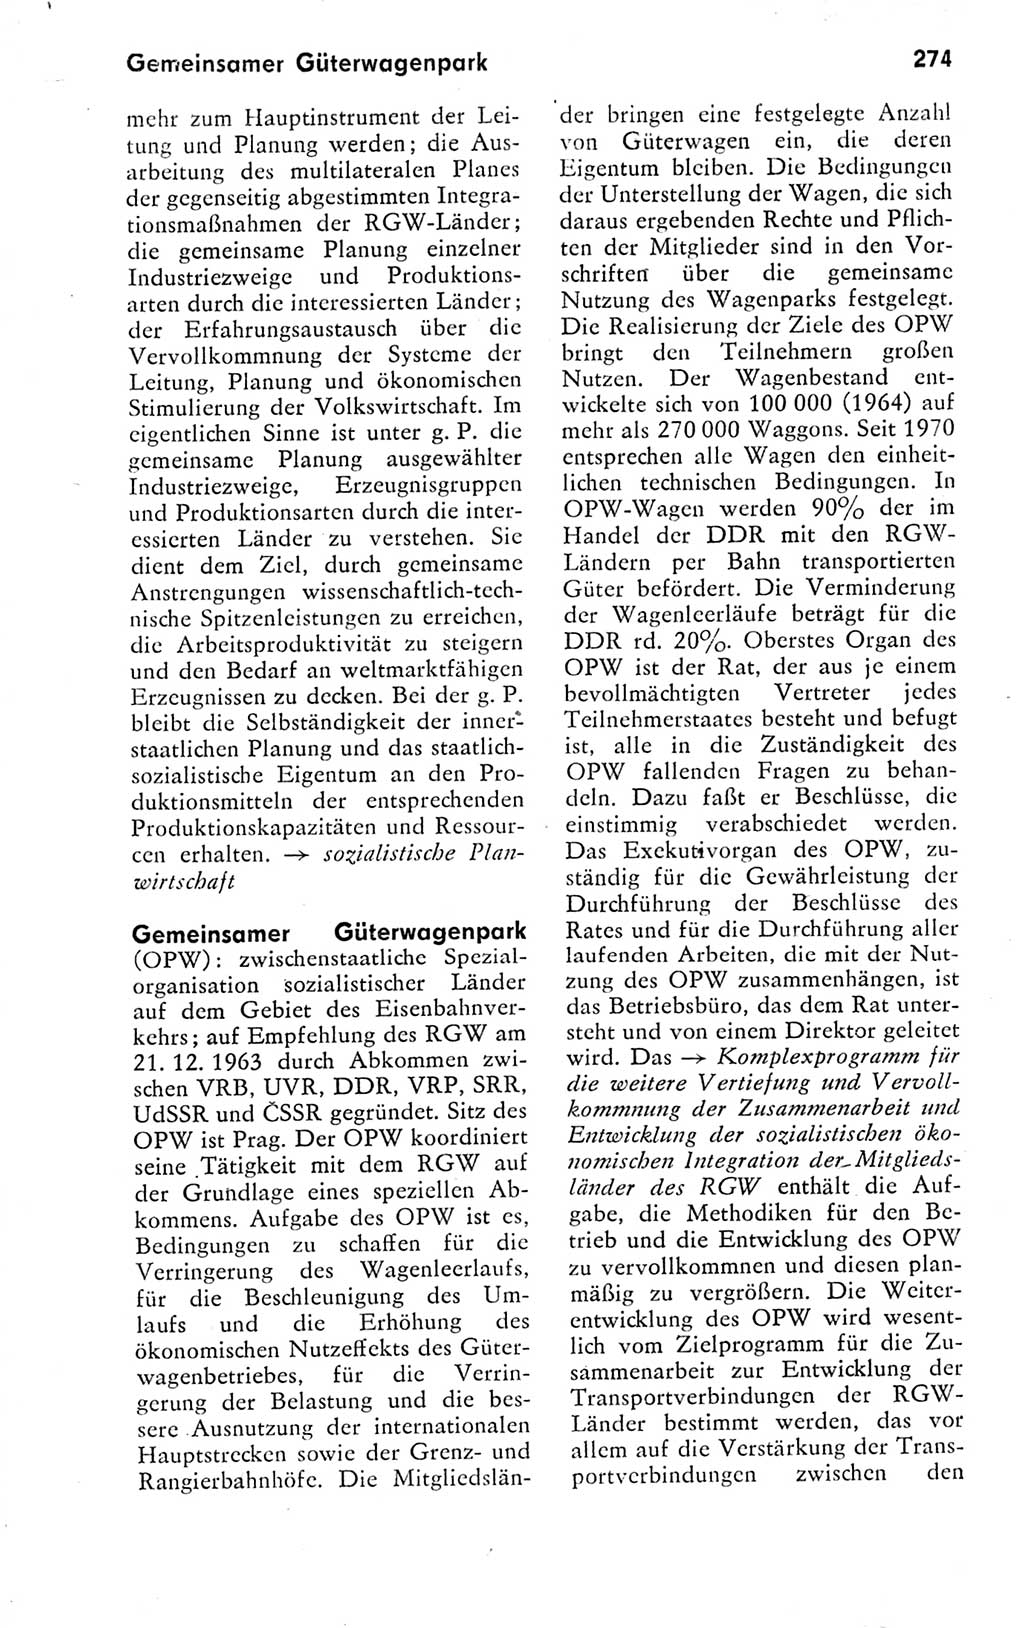 Kleines politisches Wörterbuch [Deutsche Demokratische Republik (DDR)] 1978, Seite 274 (Kl. pol. Wb. DDR 1978, S. 274)